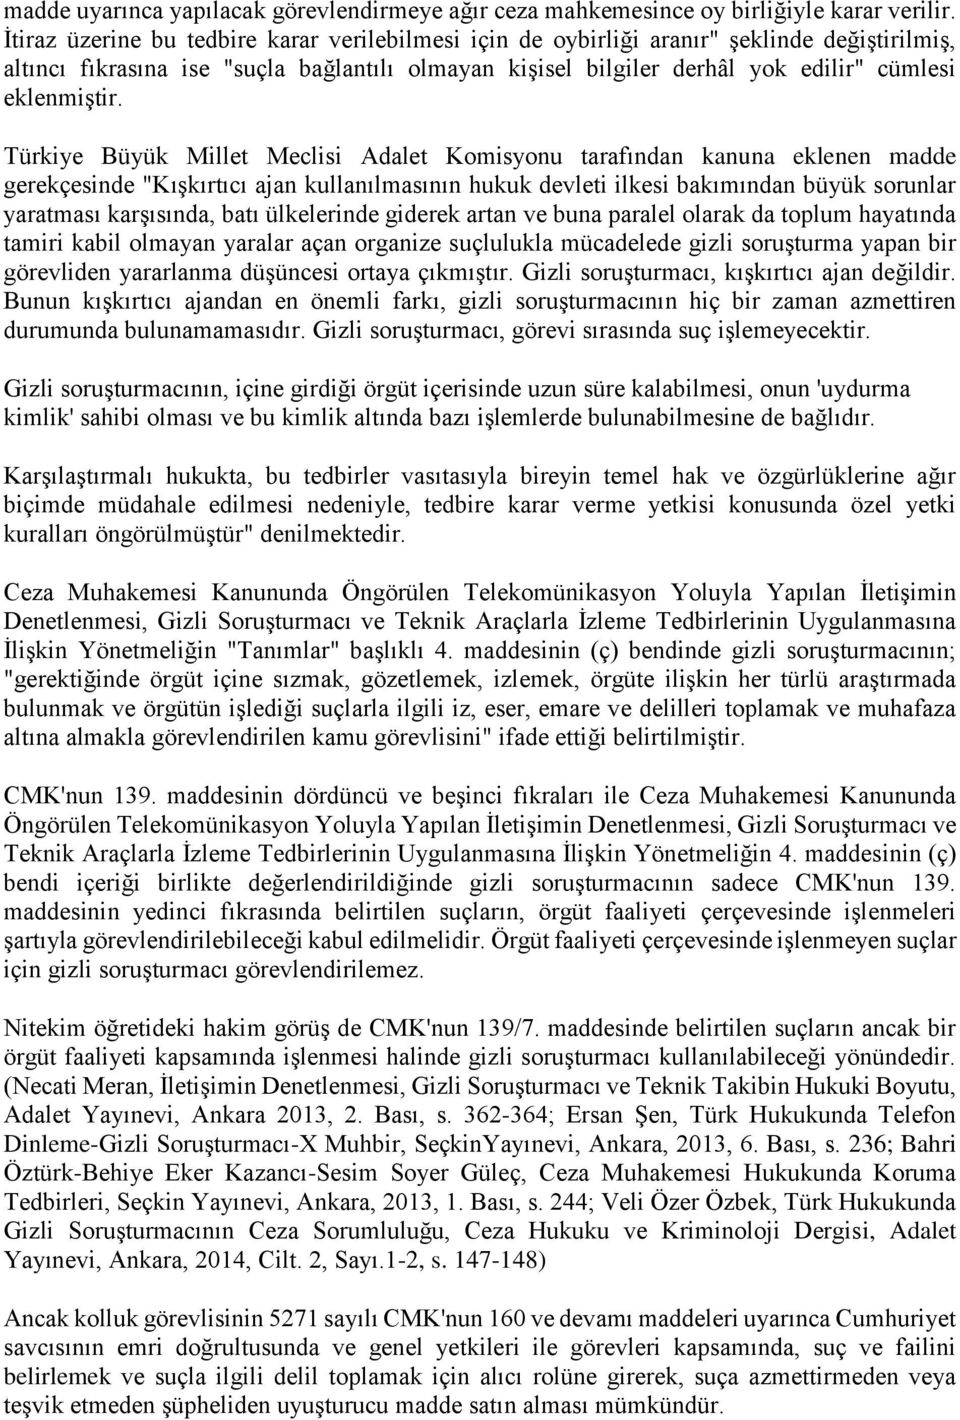 Türkiye Büyük Millet Meclisi Adalet Komisyonu tarafından kanuna eklenen madde gerekçesinde "Kışkırtıcı ajan kullanılmasının hukuk devleti ilkesi bakımından büyük sorunlar yaratması karşısında, batı